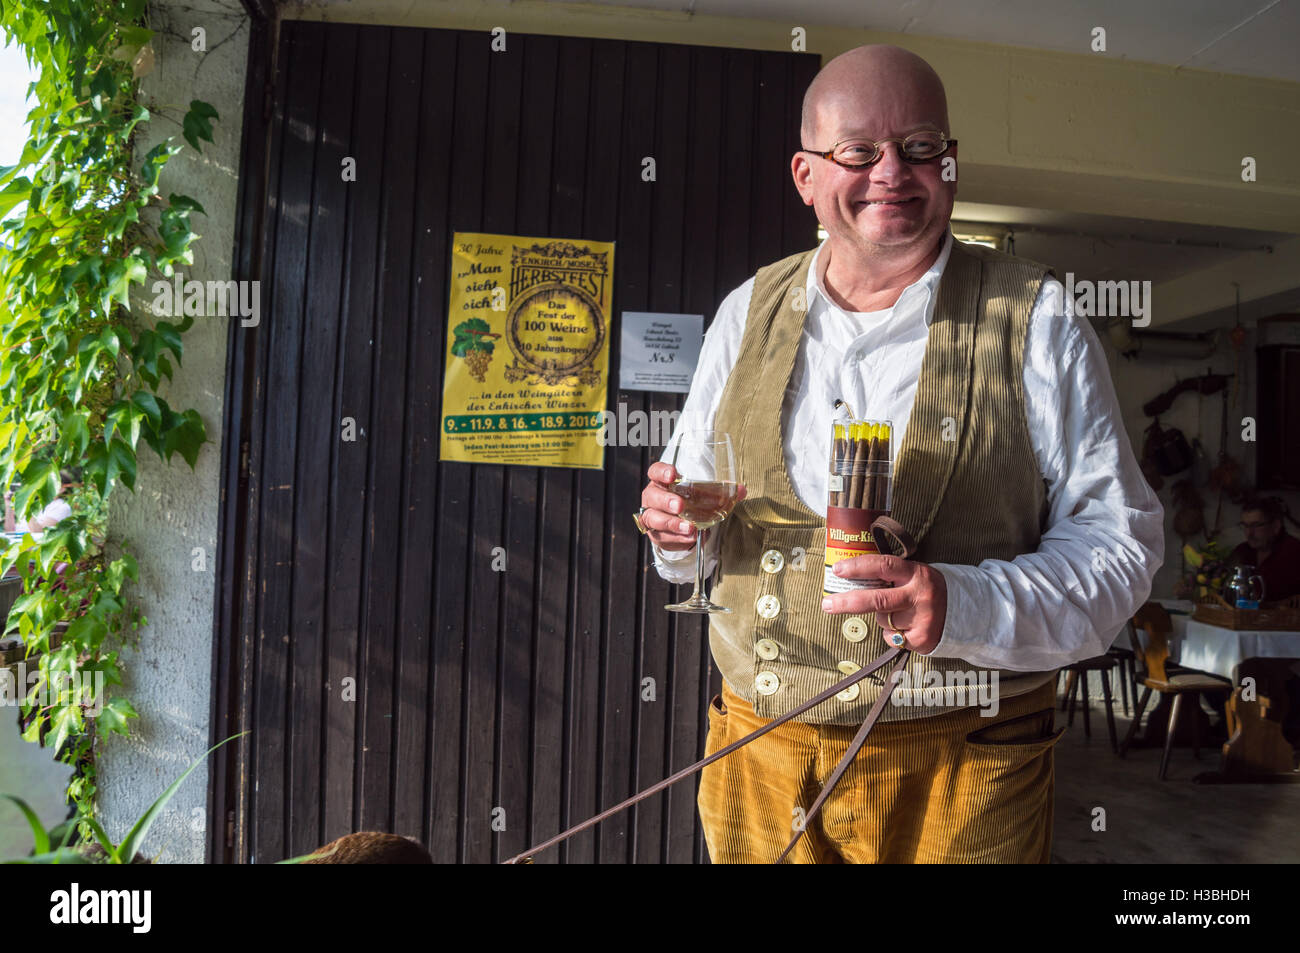 Un hombre en lederhosen llevaba una caja de cigarros y un vaso de vino blanco, Riesling Weingut Erhard Bartz, Enkirch, Mosel, Alemania Foto de stock